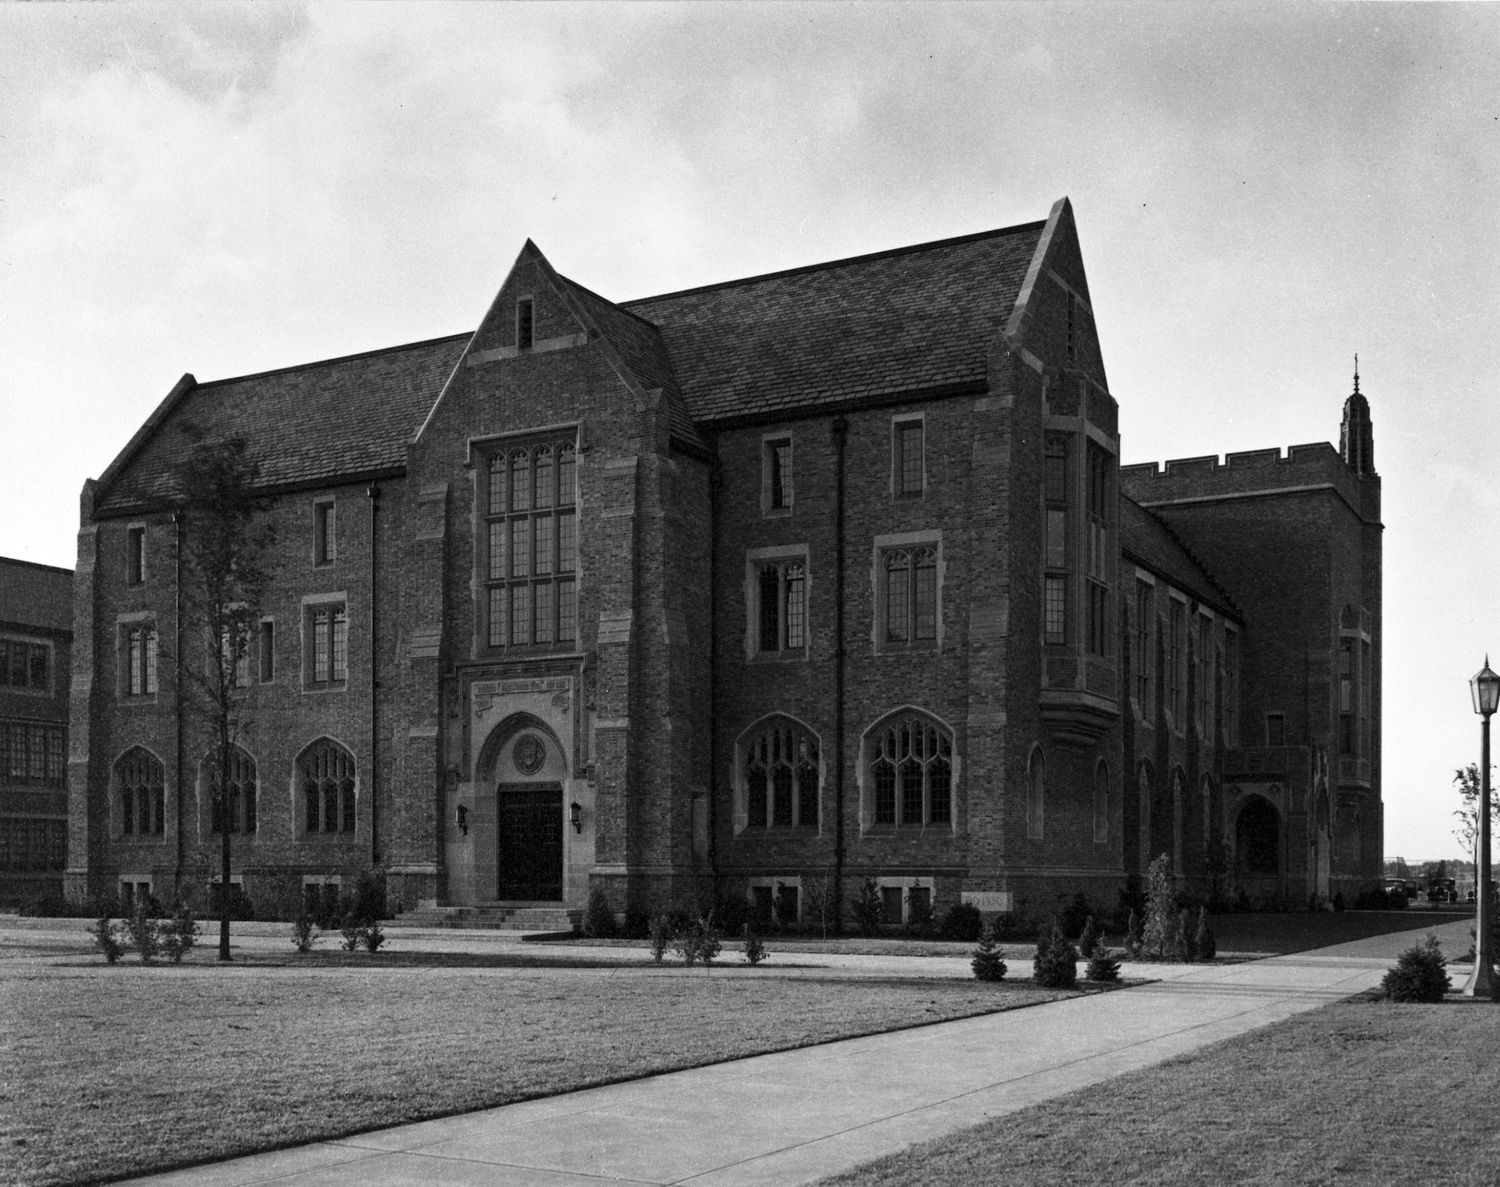 Original Law School Building